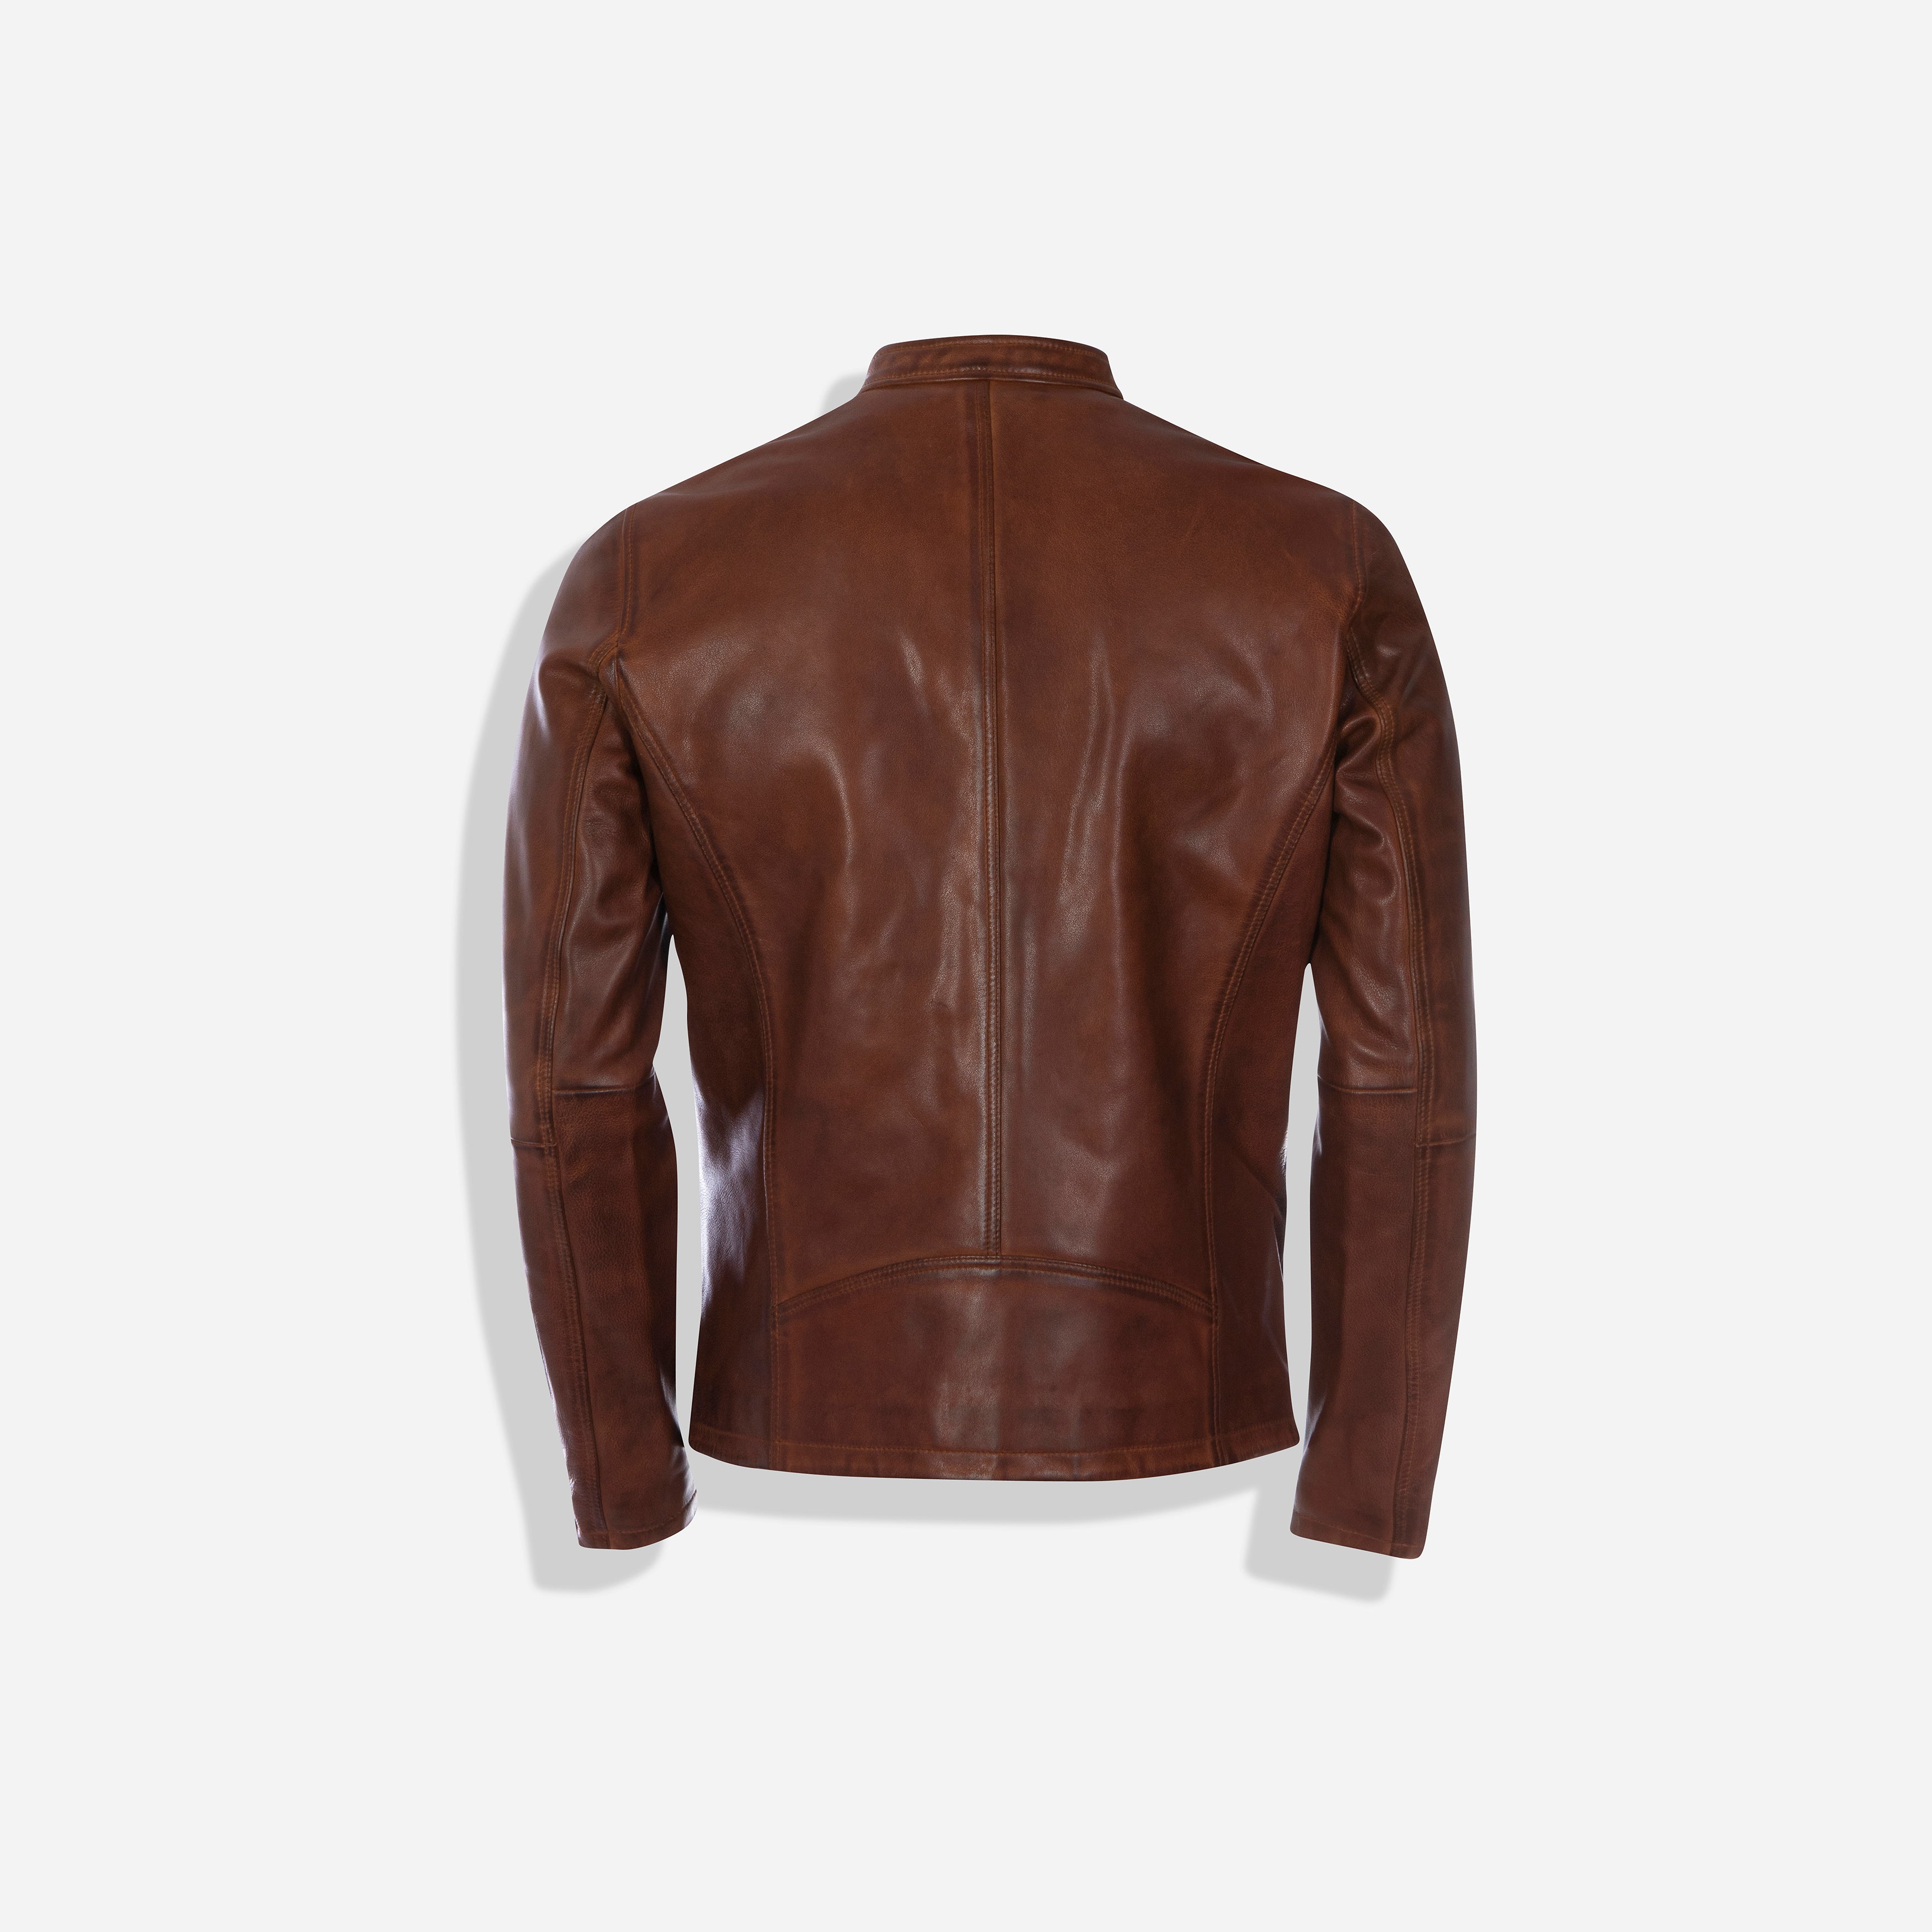 Burton Mandarin Collar Leather Jacket, Cognac